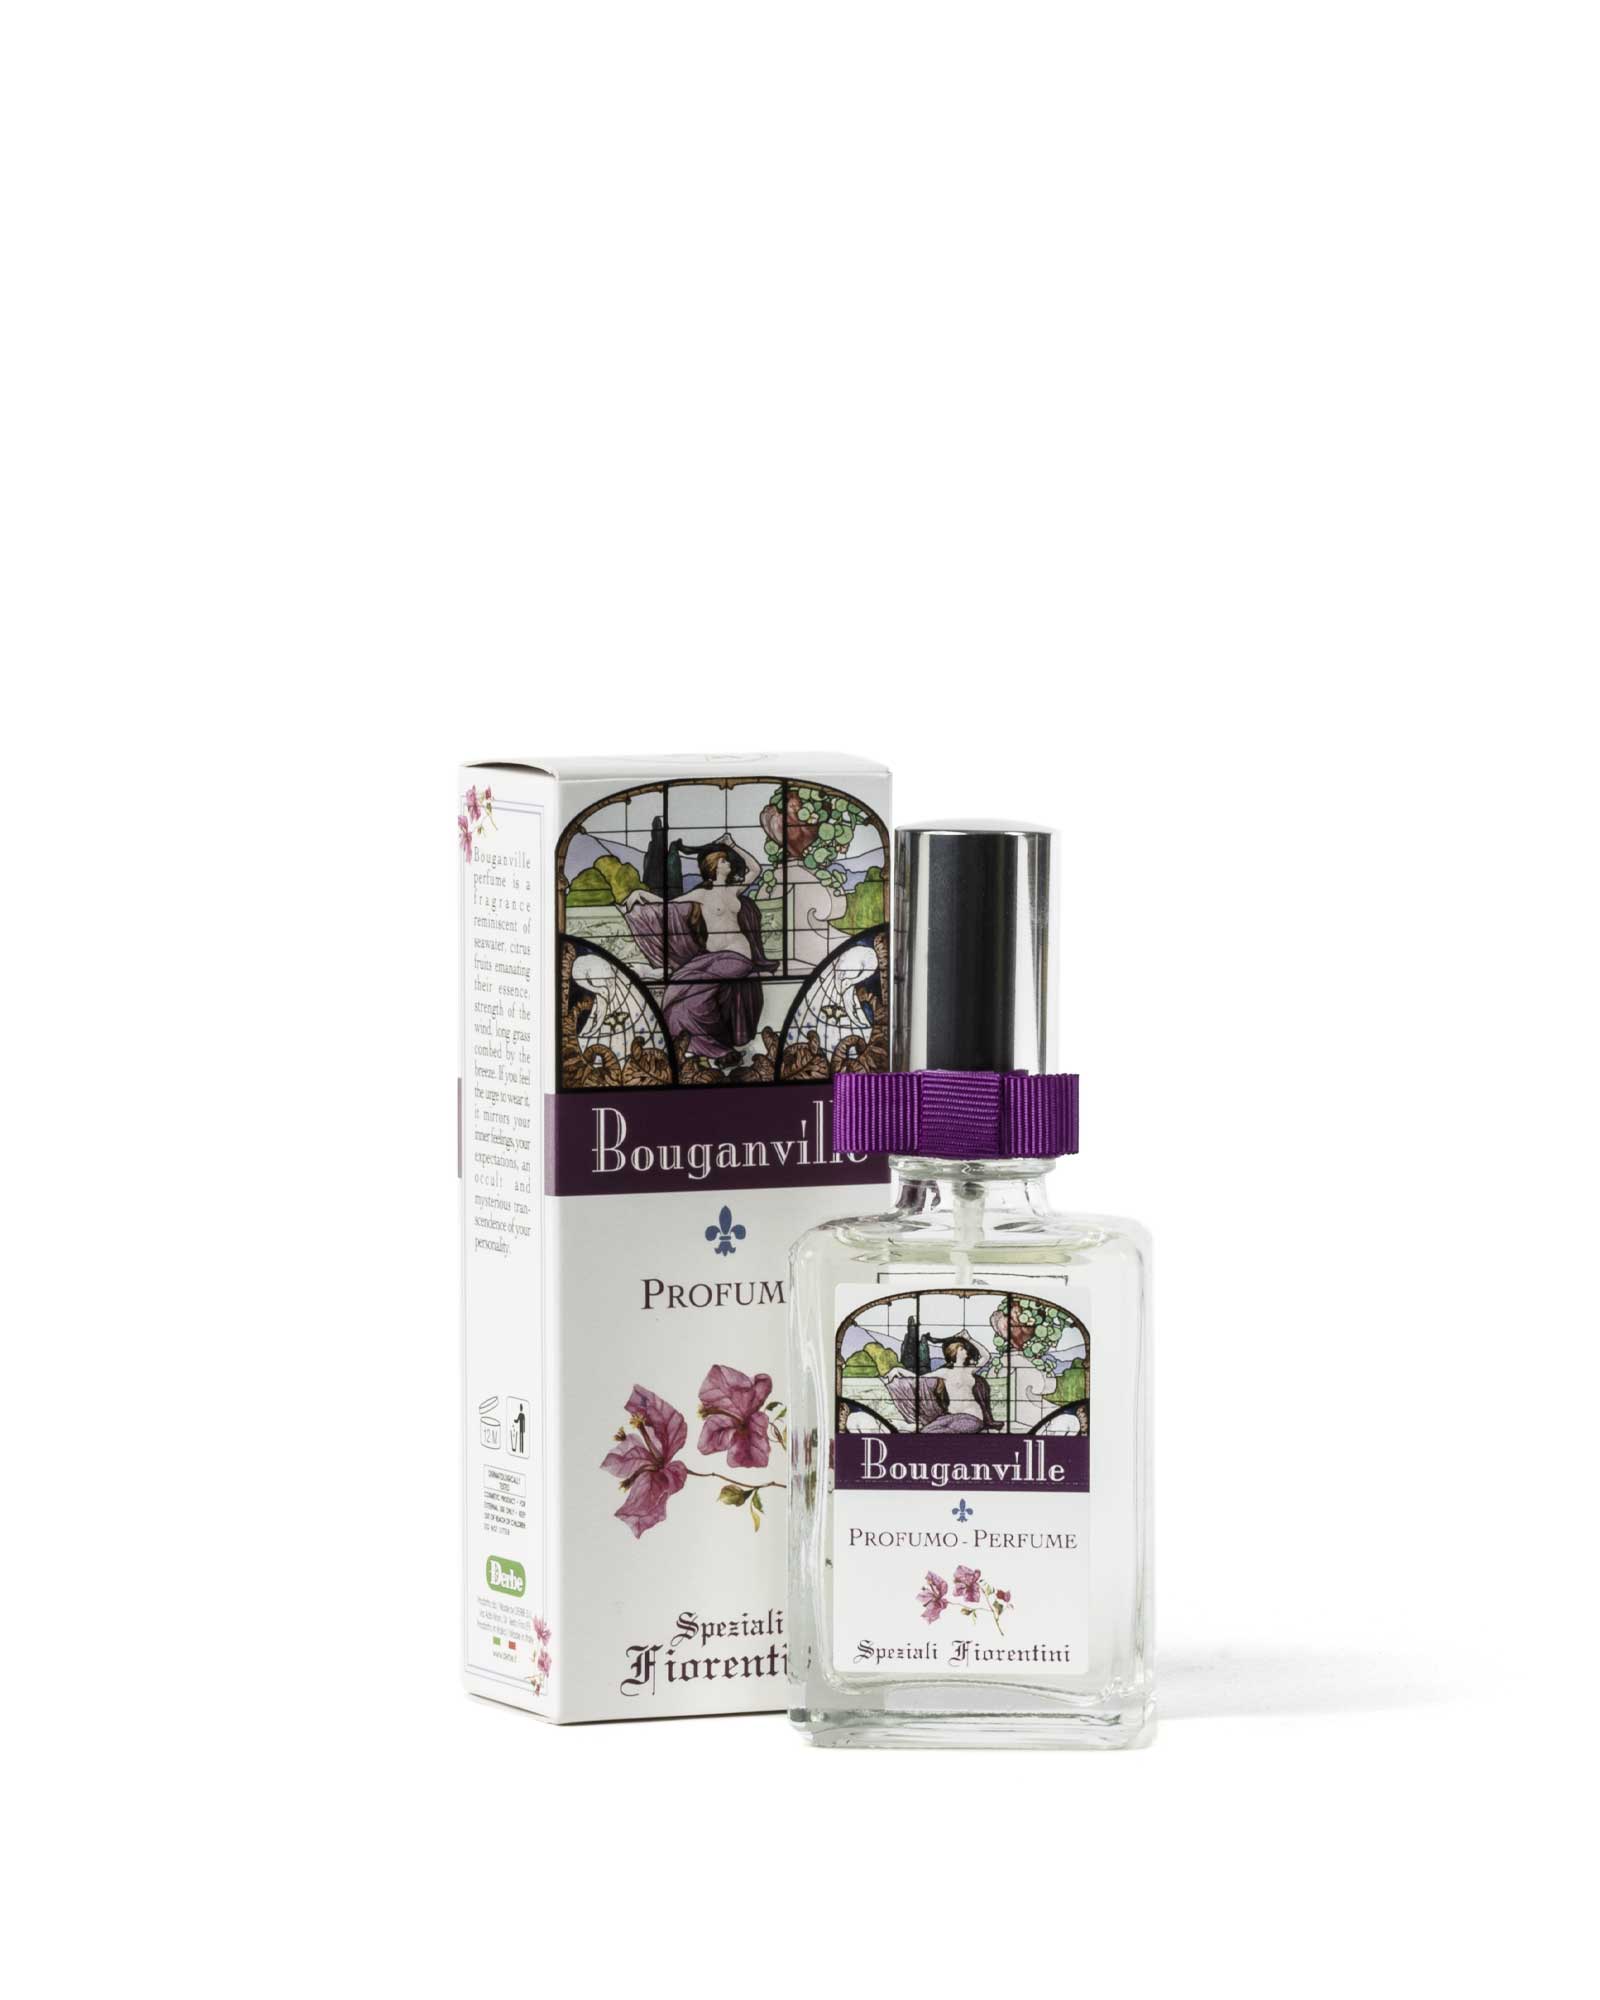 Perfume Bougainvillea - Boticarios florentinos - Derbe